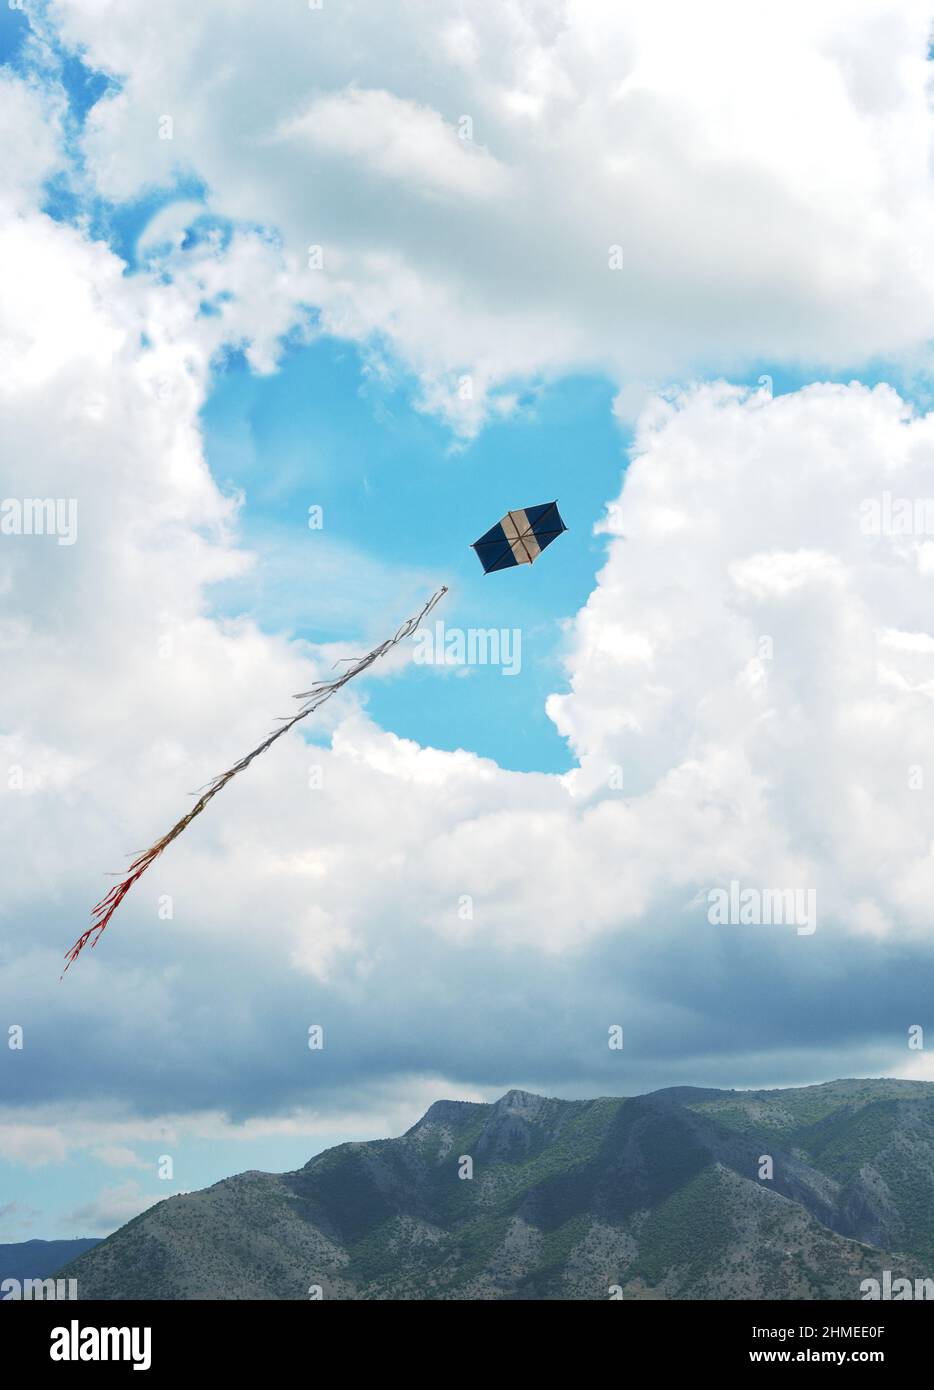 Un cerf-volant qui vole contre un ciel avec un paysage de nuages en forme de coeur Banque D'Images